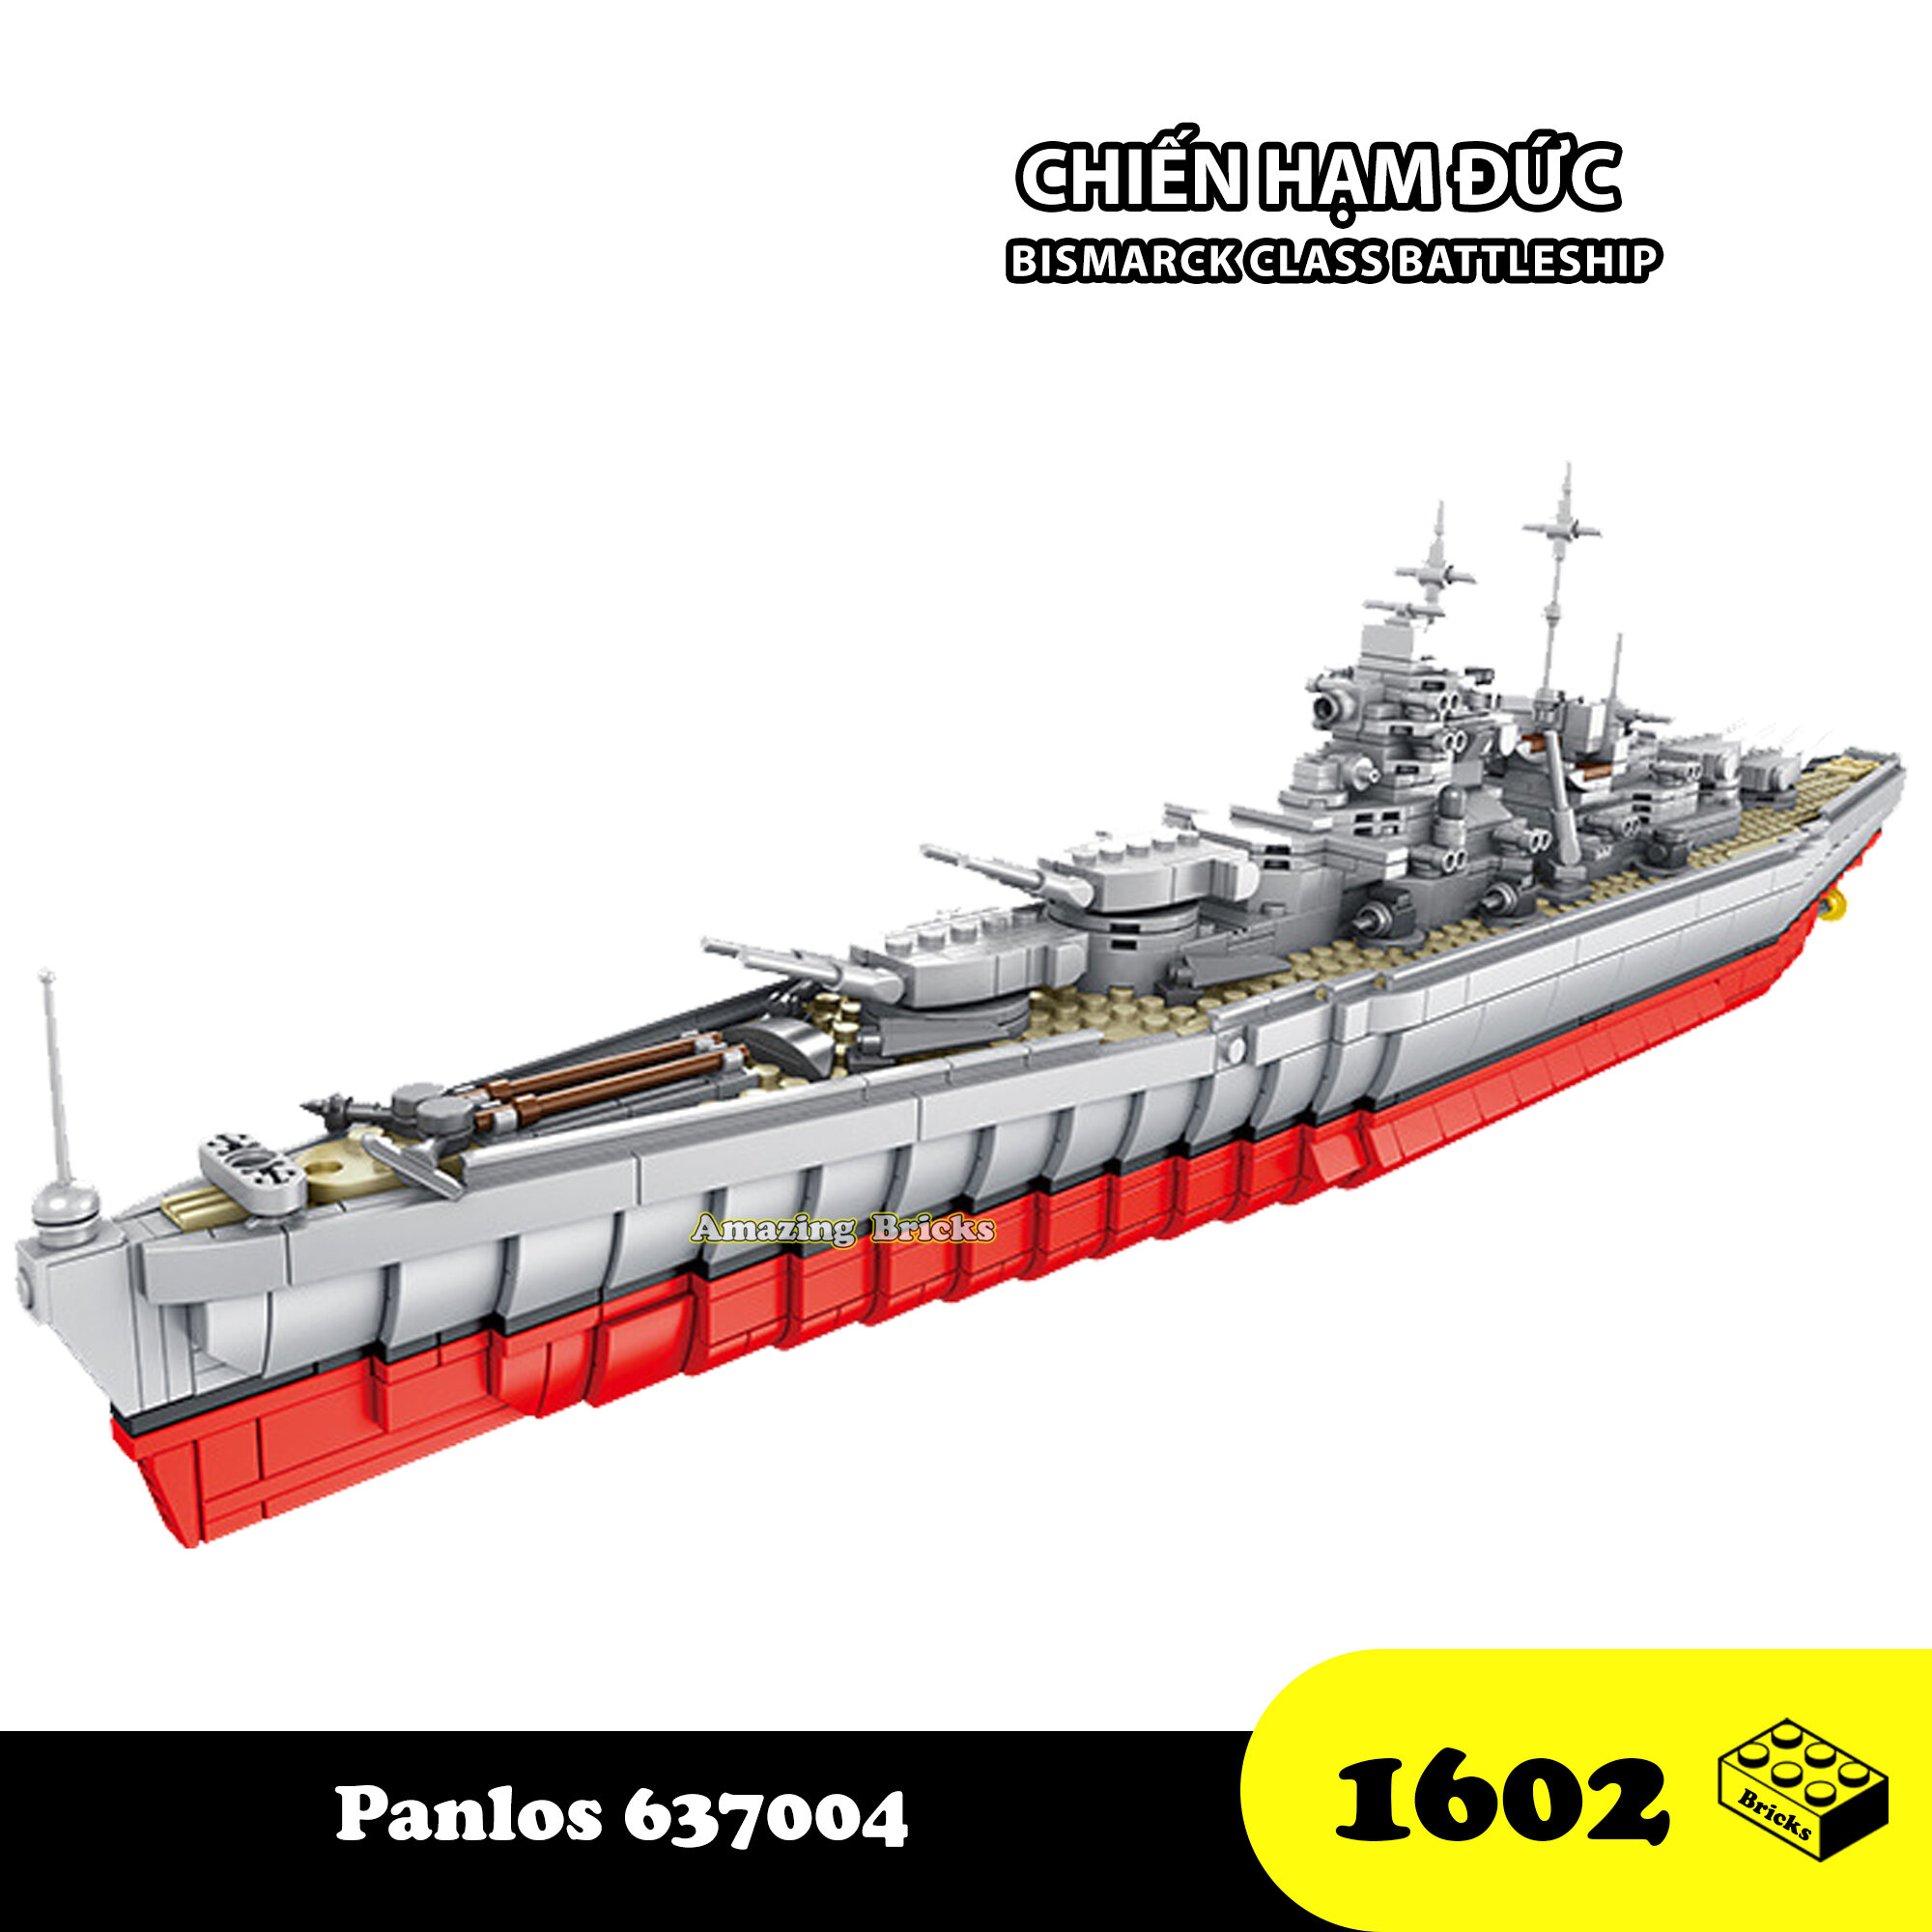 Đồ chơi Lắp Ráp Tàu chiến hạm Đức, Panlos 637004 Bismarck Class Battleship